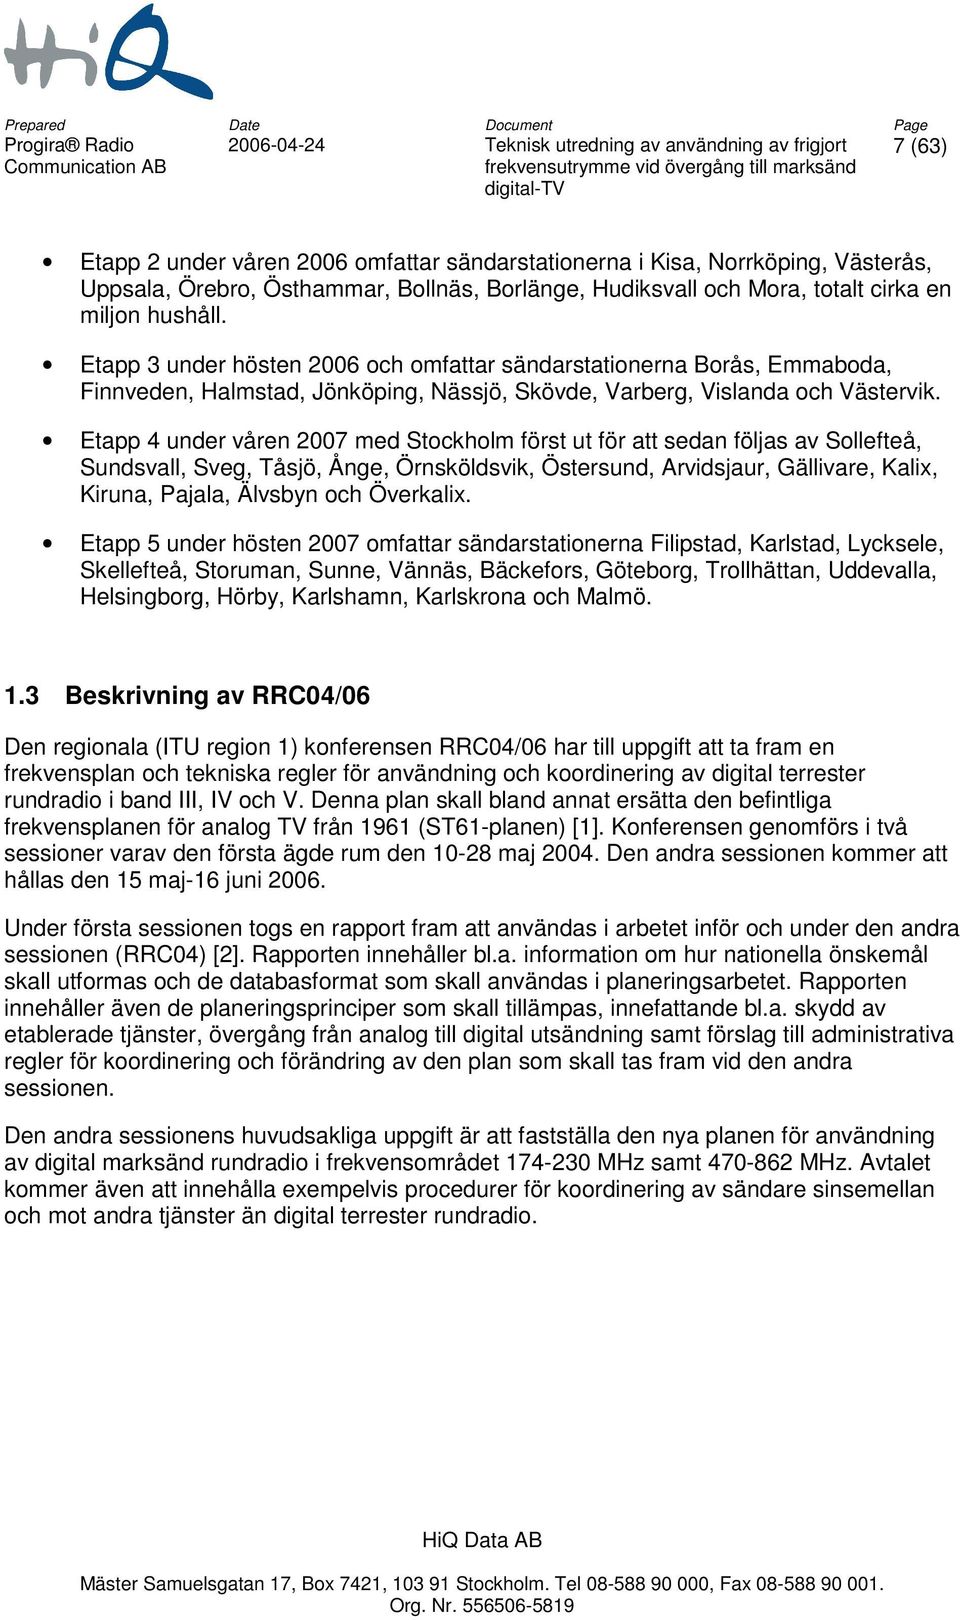 Etapp 4 under våren 2007 med Stockholm först ut för att sedan följas av Sollefteå, Sundsvall, Sveg, Tåsjö, Ånge, Örnsköldsvik, Östersund, Arvidsjaur, Gällivare, Kalix, Kiruna, Pajala, Älvsbyn och